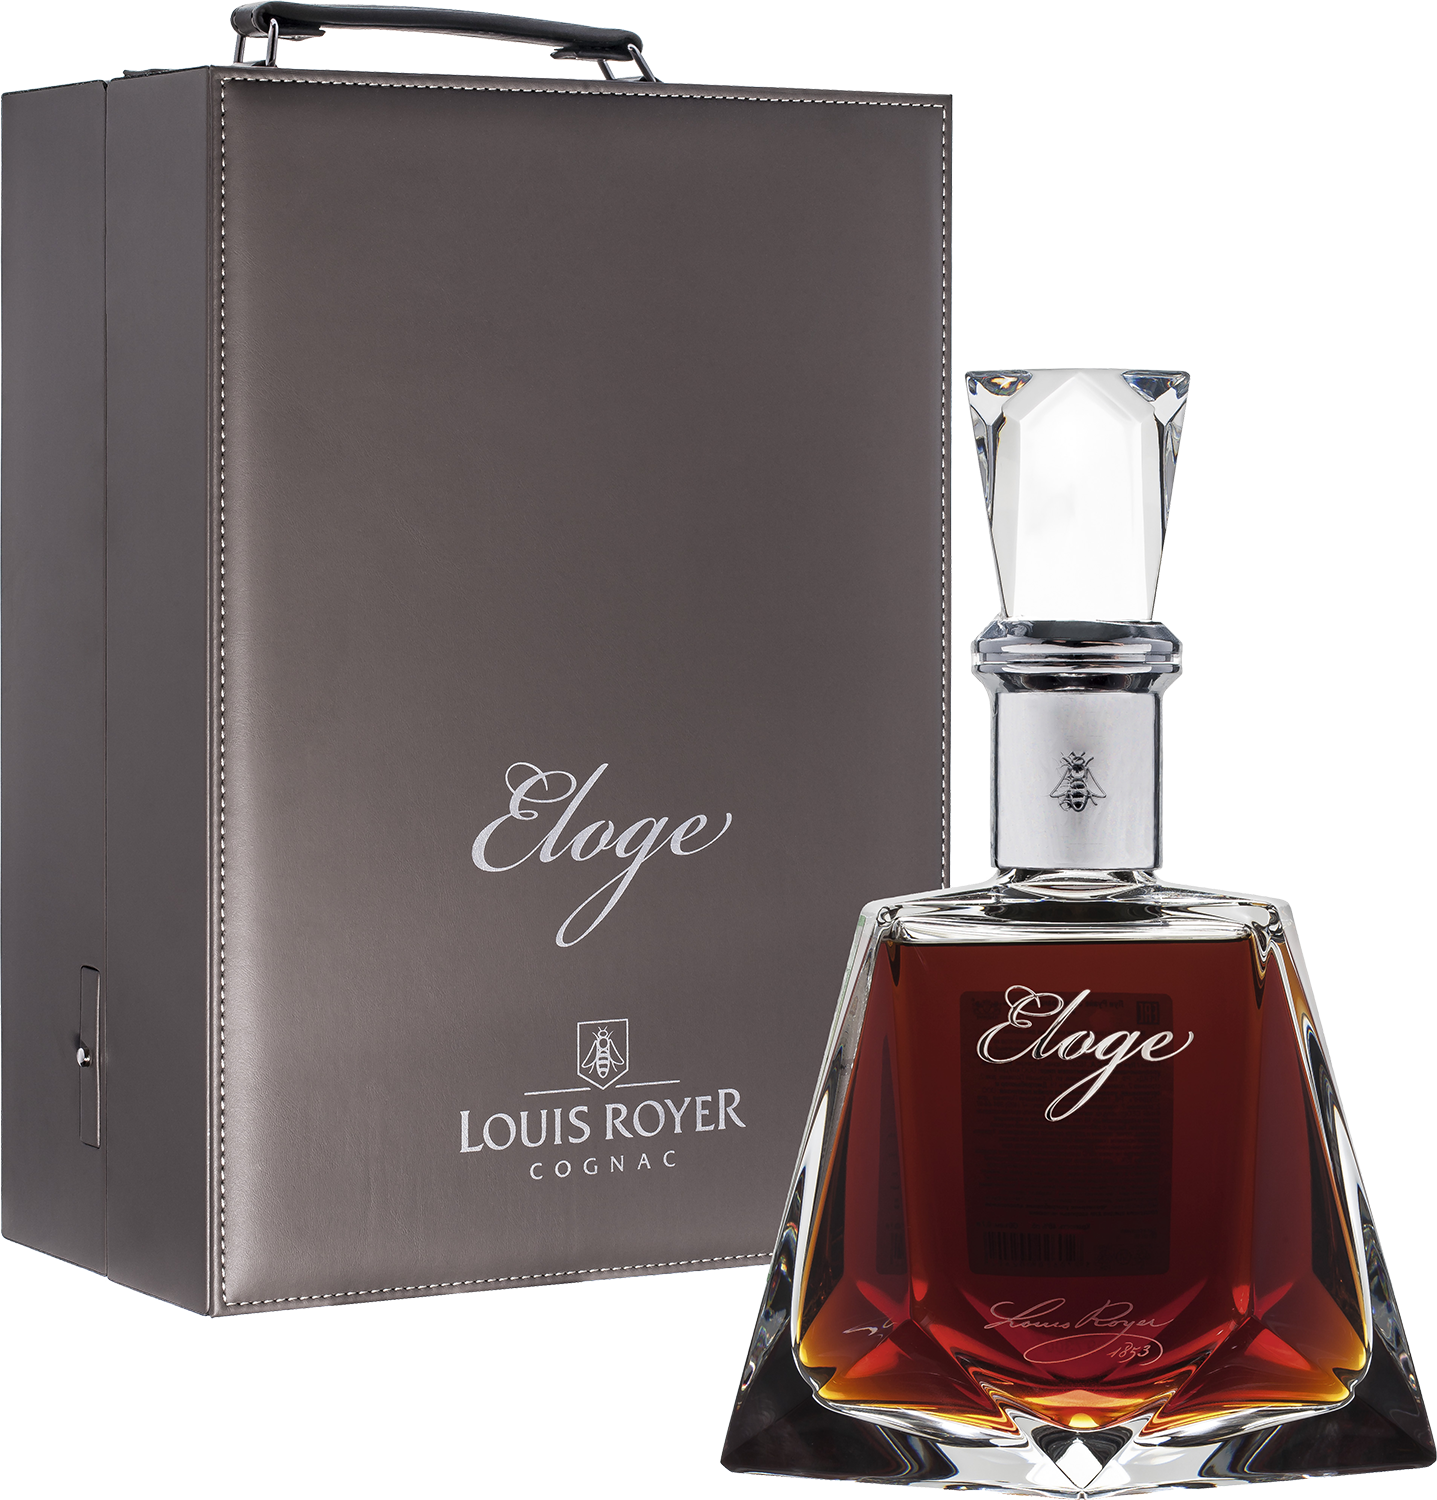 a e dor cristal grande champagne cognac extra Louis Royer Eloge Cognac Grande Champagne (gift box)